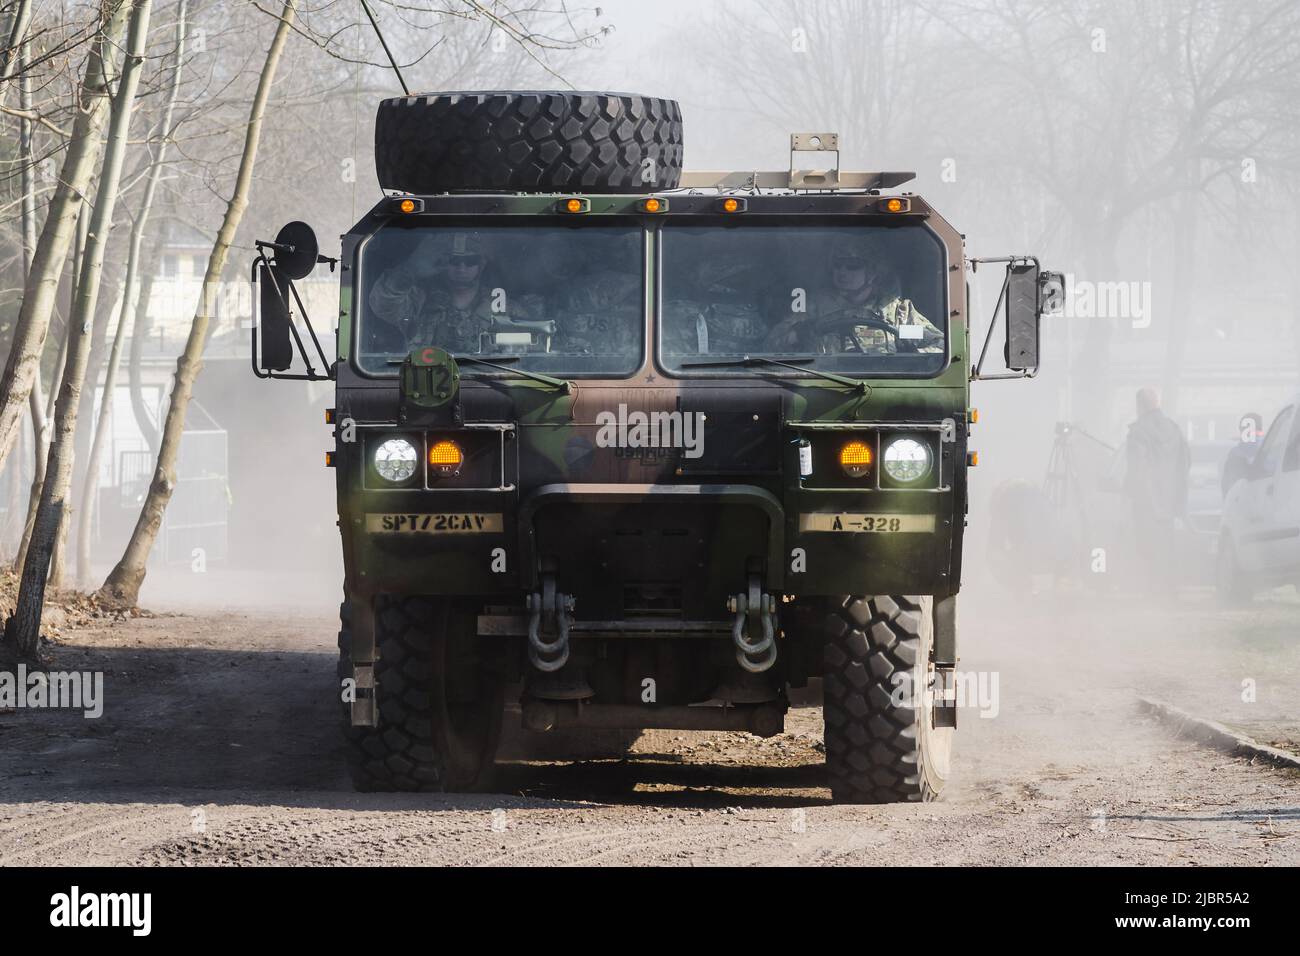 Lublin, Pologne - 25 mars 2015: Armée des États-Unis Oshkosh système de véhicule logistique passant les rues de ville Banque D'Images